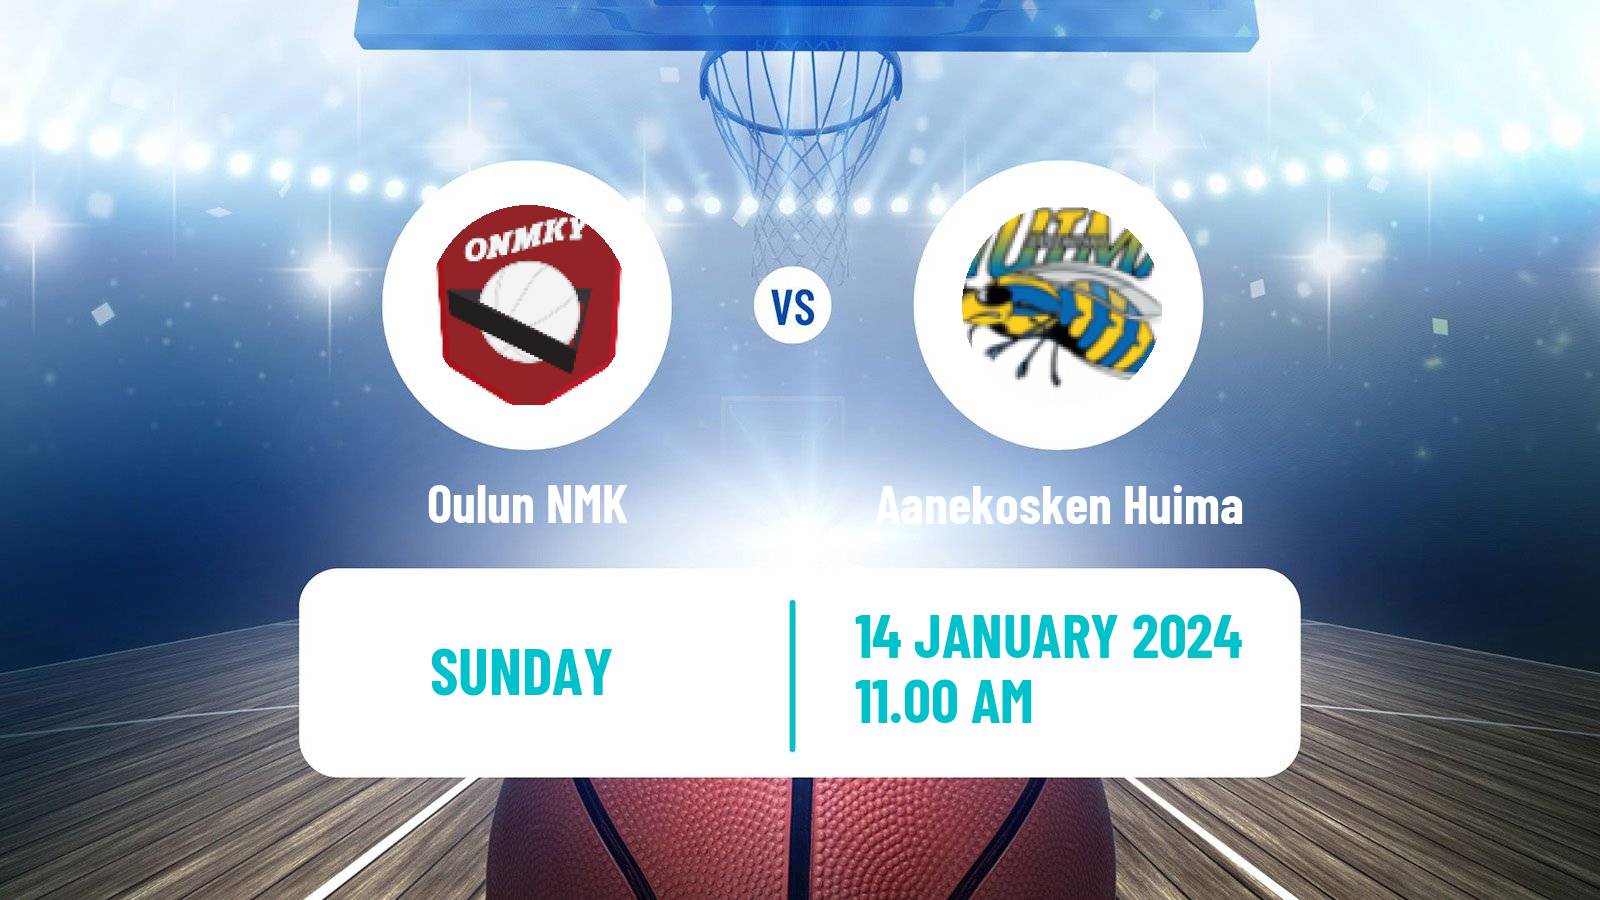 Basketball Finnish I Divisioona A Basketball Oulun NMK - Aanekosken Huima